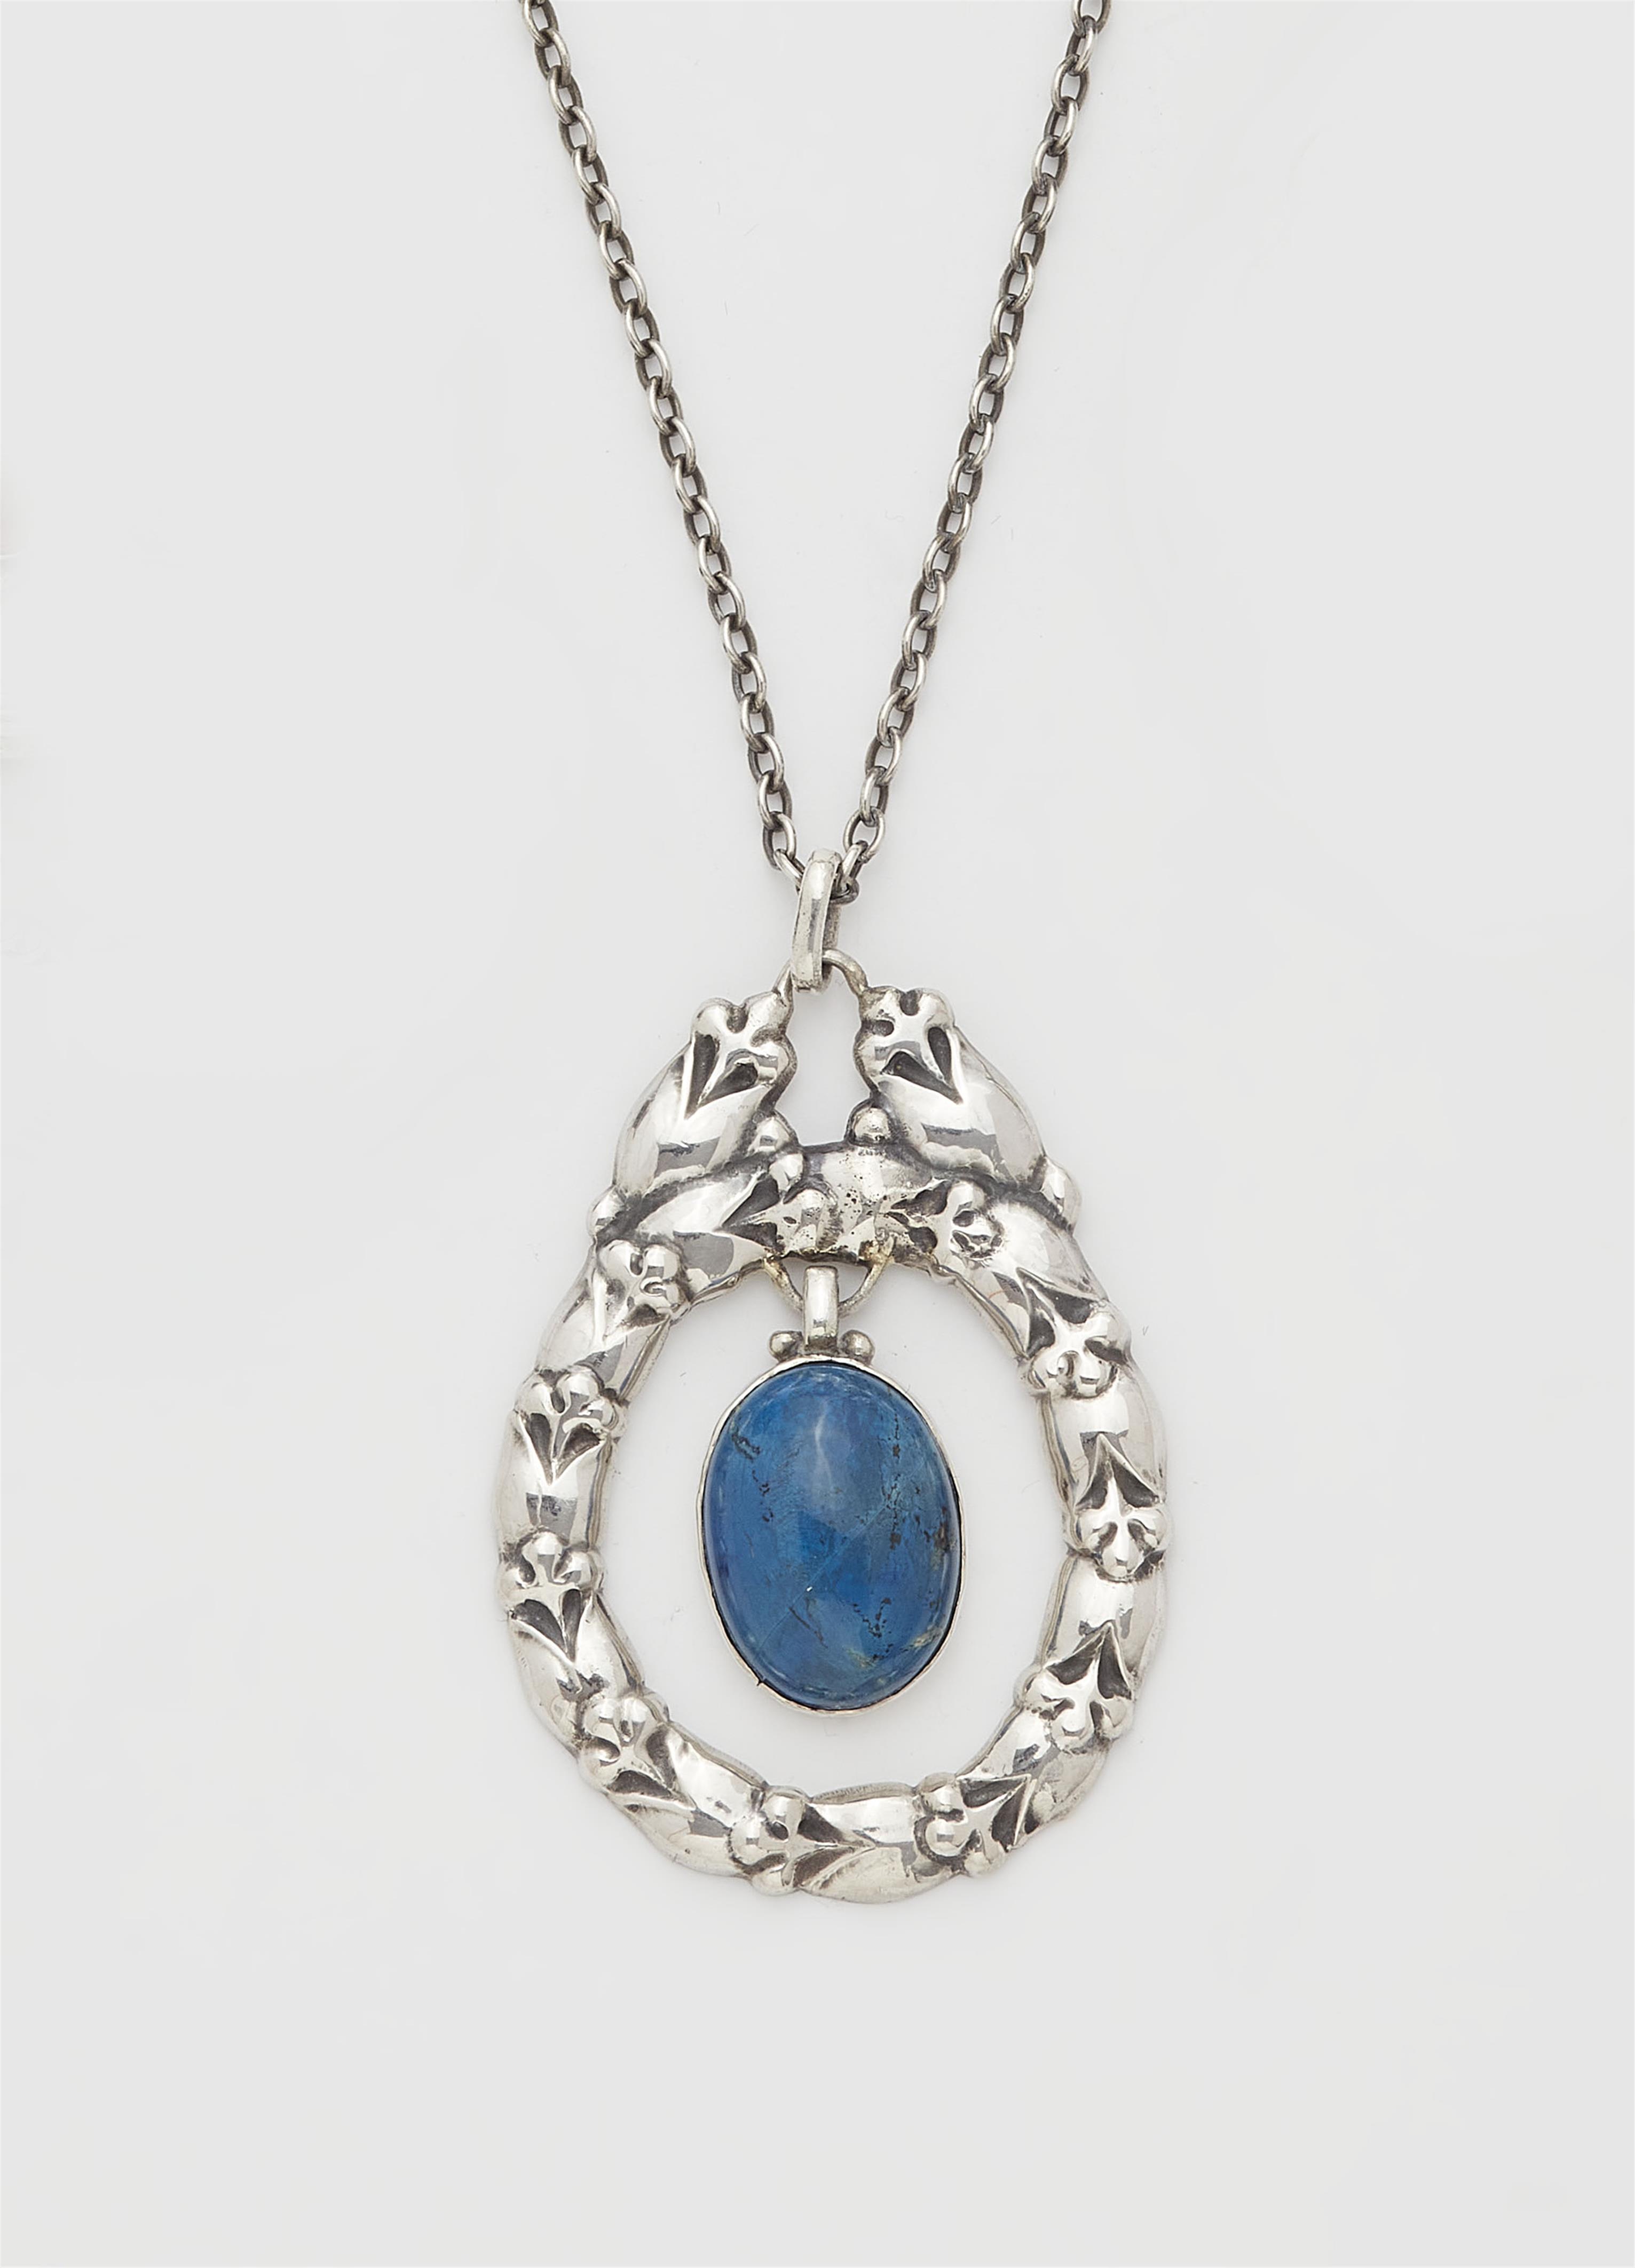 A Jugendstil silver necklace, model no. 20 - image-1